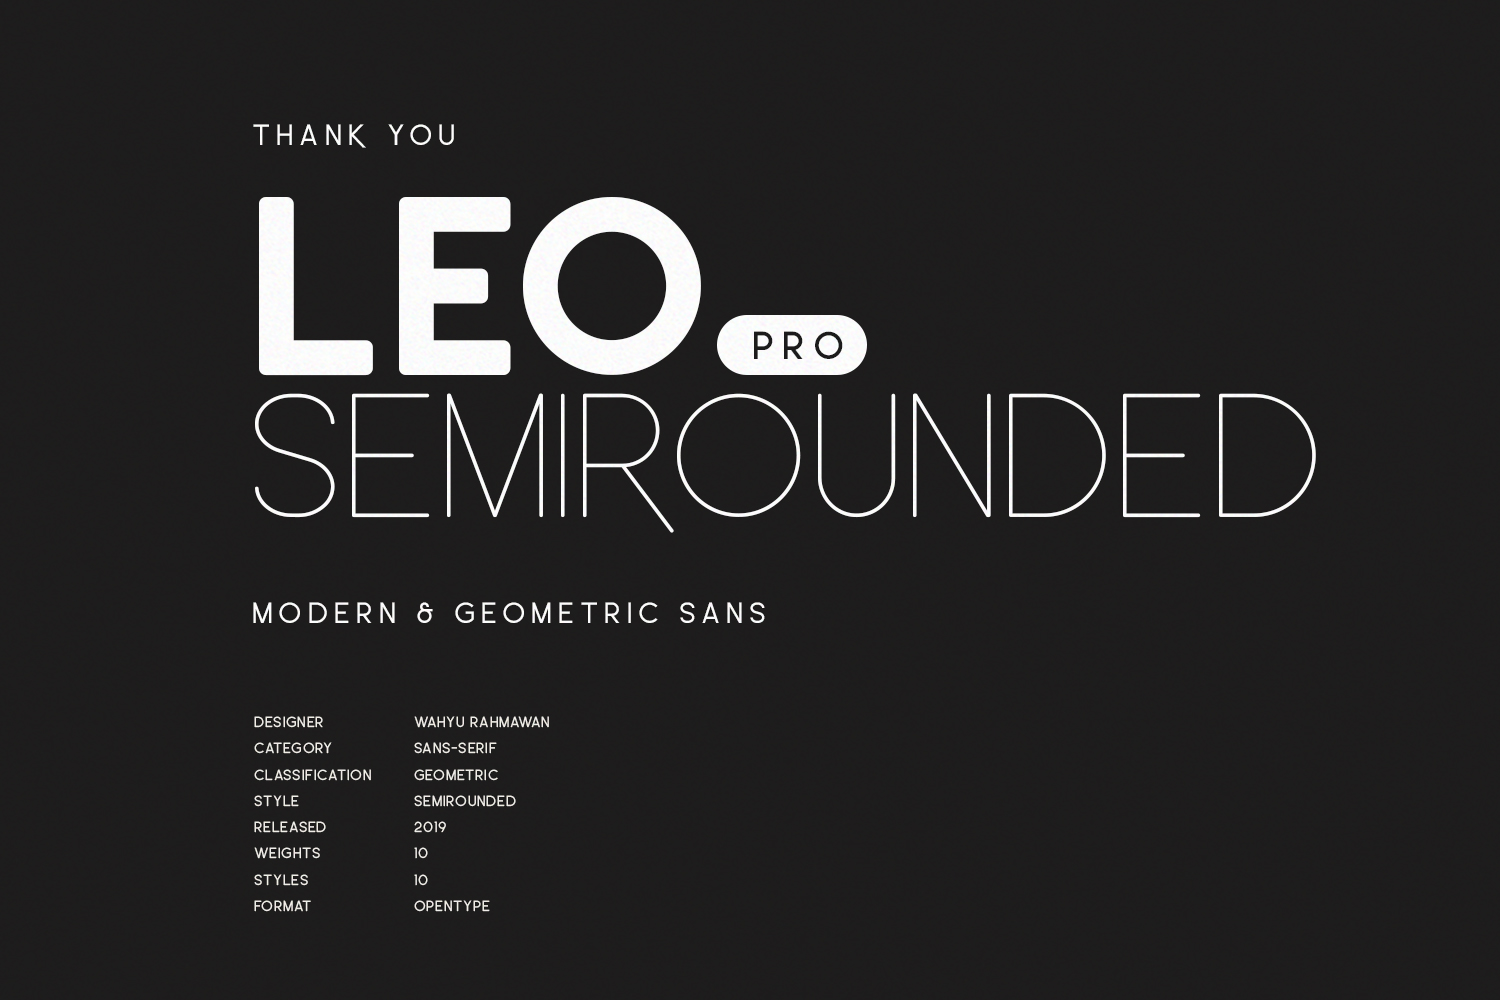 Leo SemiRounded Pro